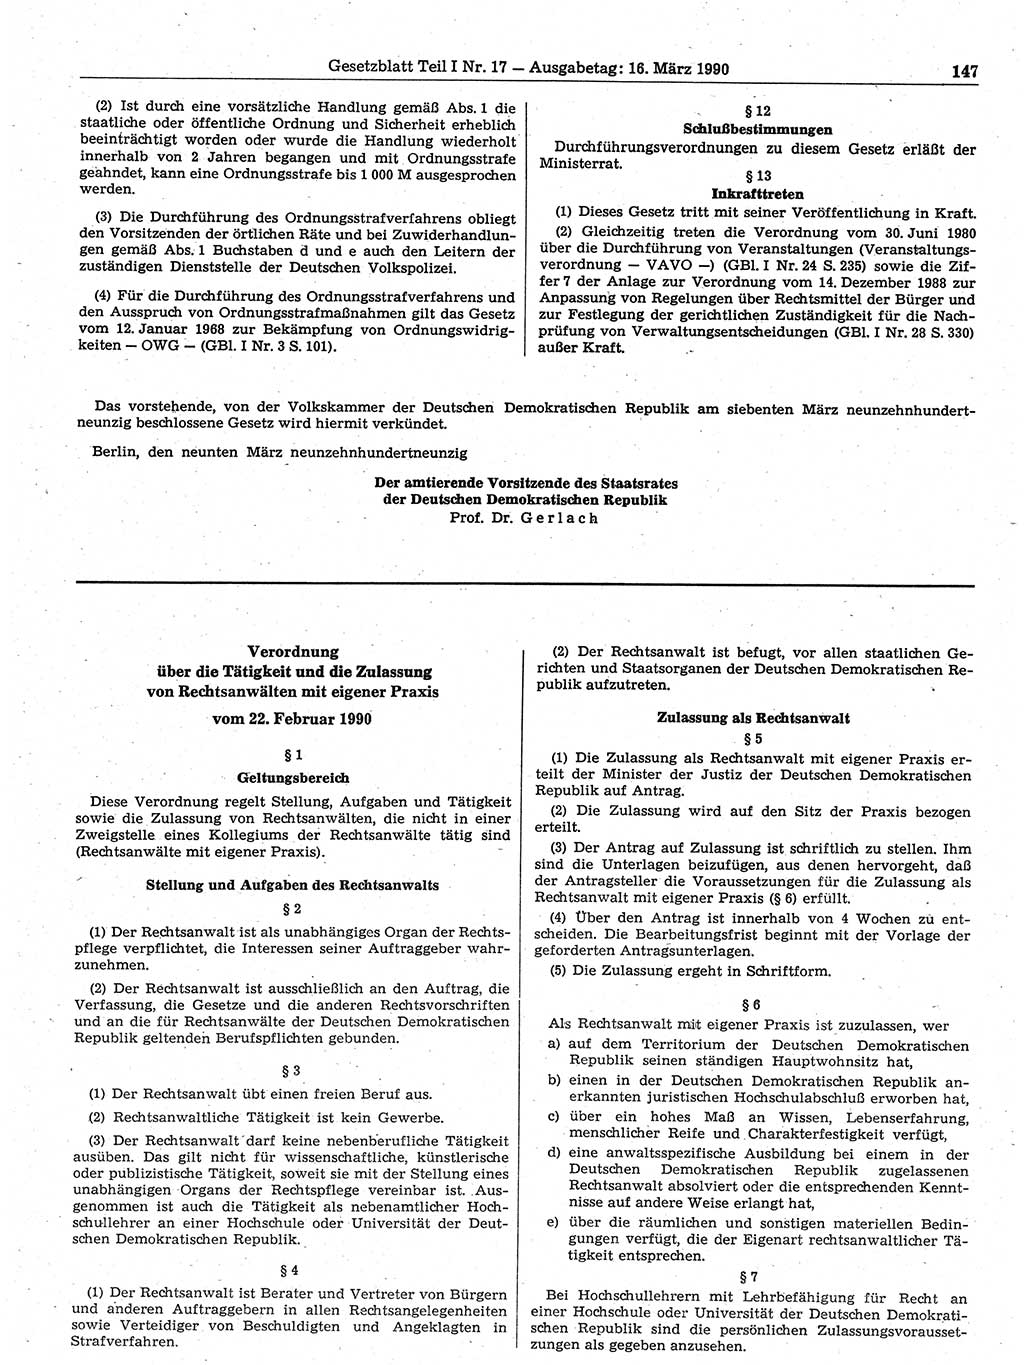 Gesetzblatt (GBl.) der Deutschen Demokratischen Republik (DDR) Teil Ⅰ 1990, Seite 147 (GBl. DDR Ⅰ 1990, S. 147)